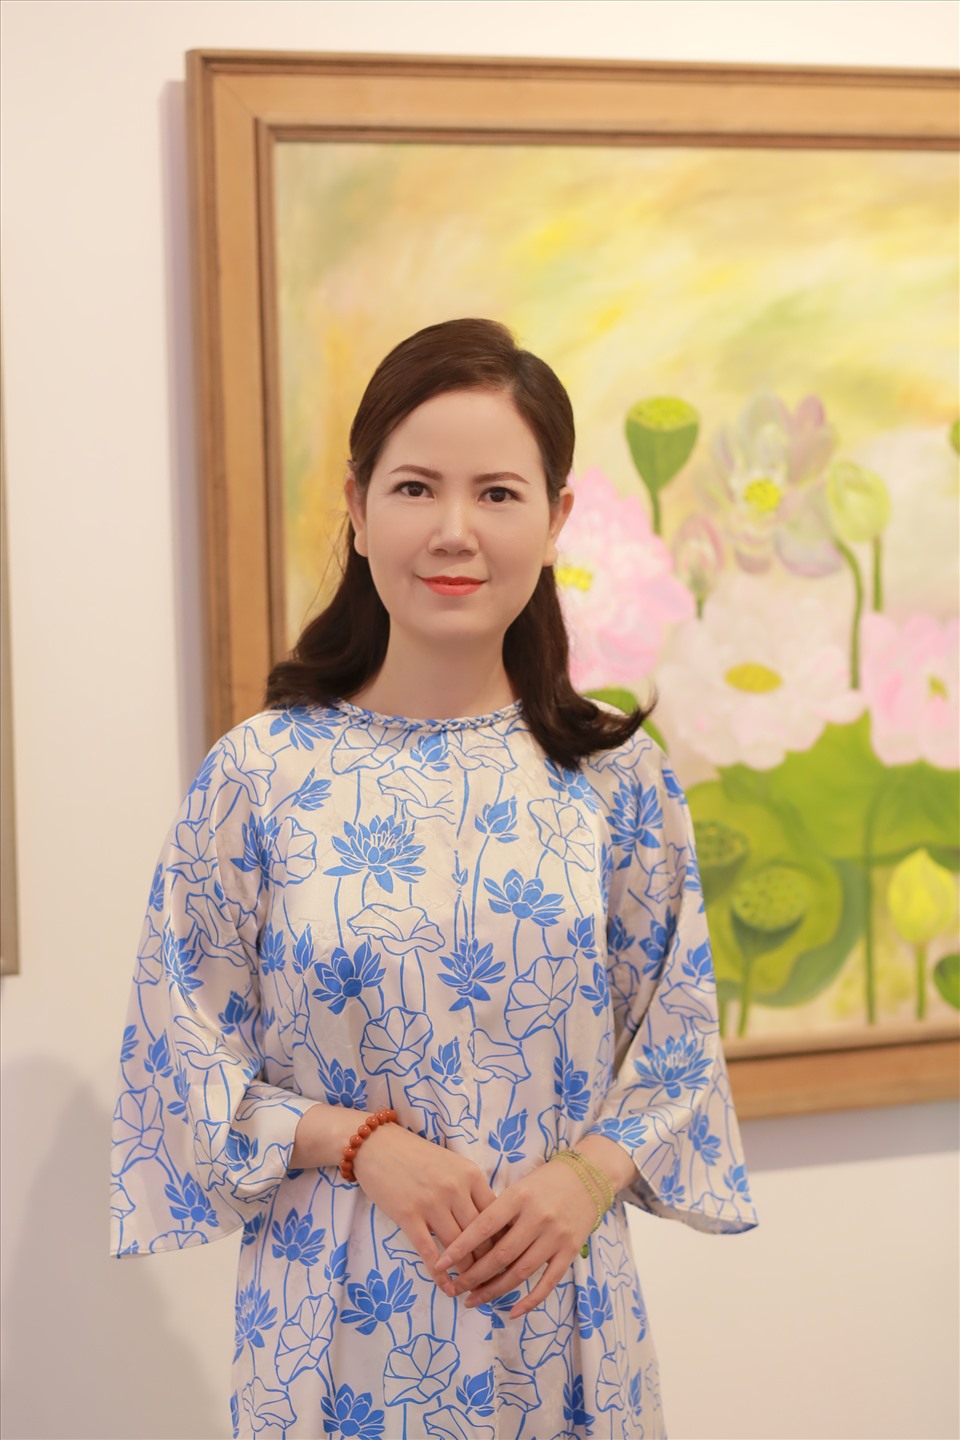 Nữ họa sĩ Kim Đức tìm thấy nhiều cảm hứng khi vẽ hoa sen. Ảnh: Nhân vật cung cấp